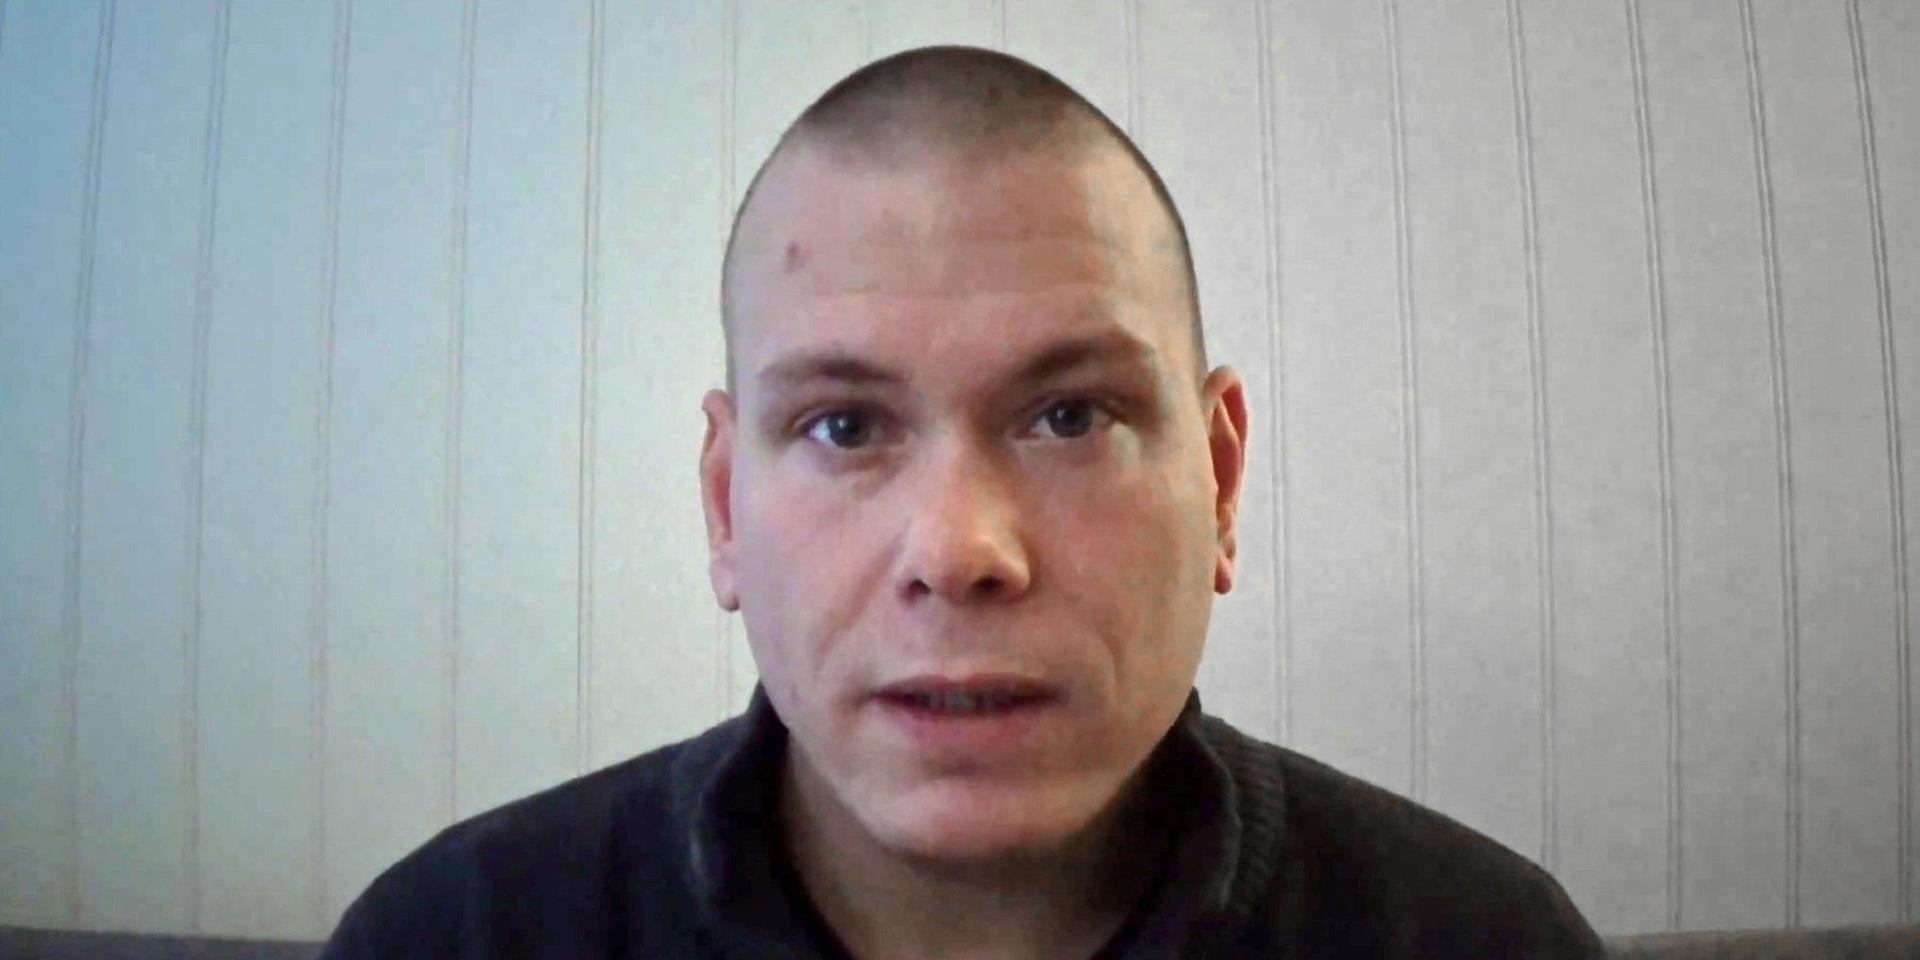 Den misstänkta gärningsmannen har identifierats som Espen Andersen Bråthen.